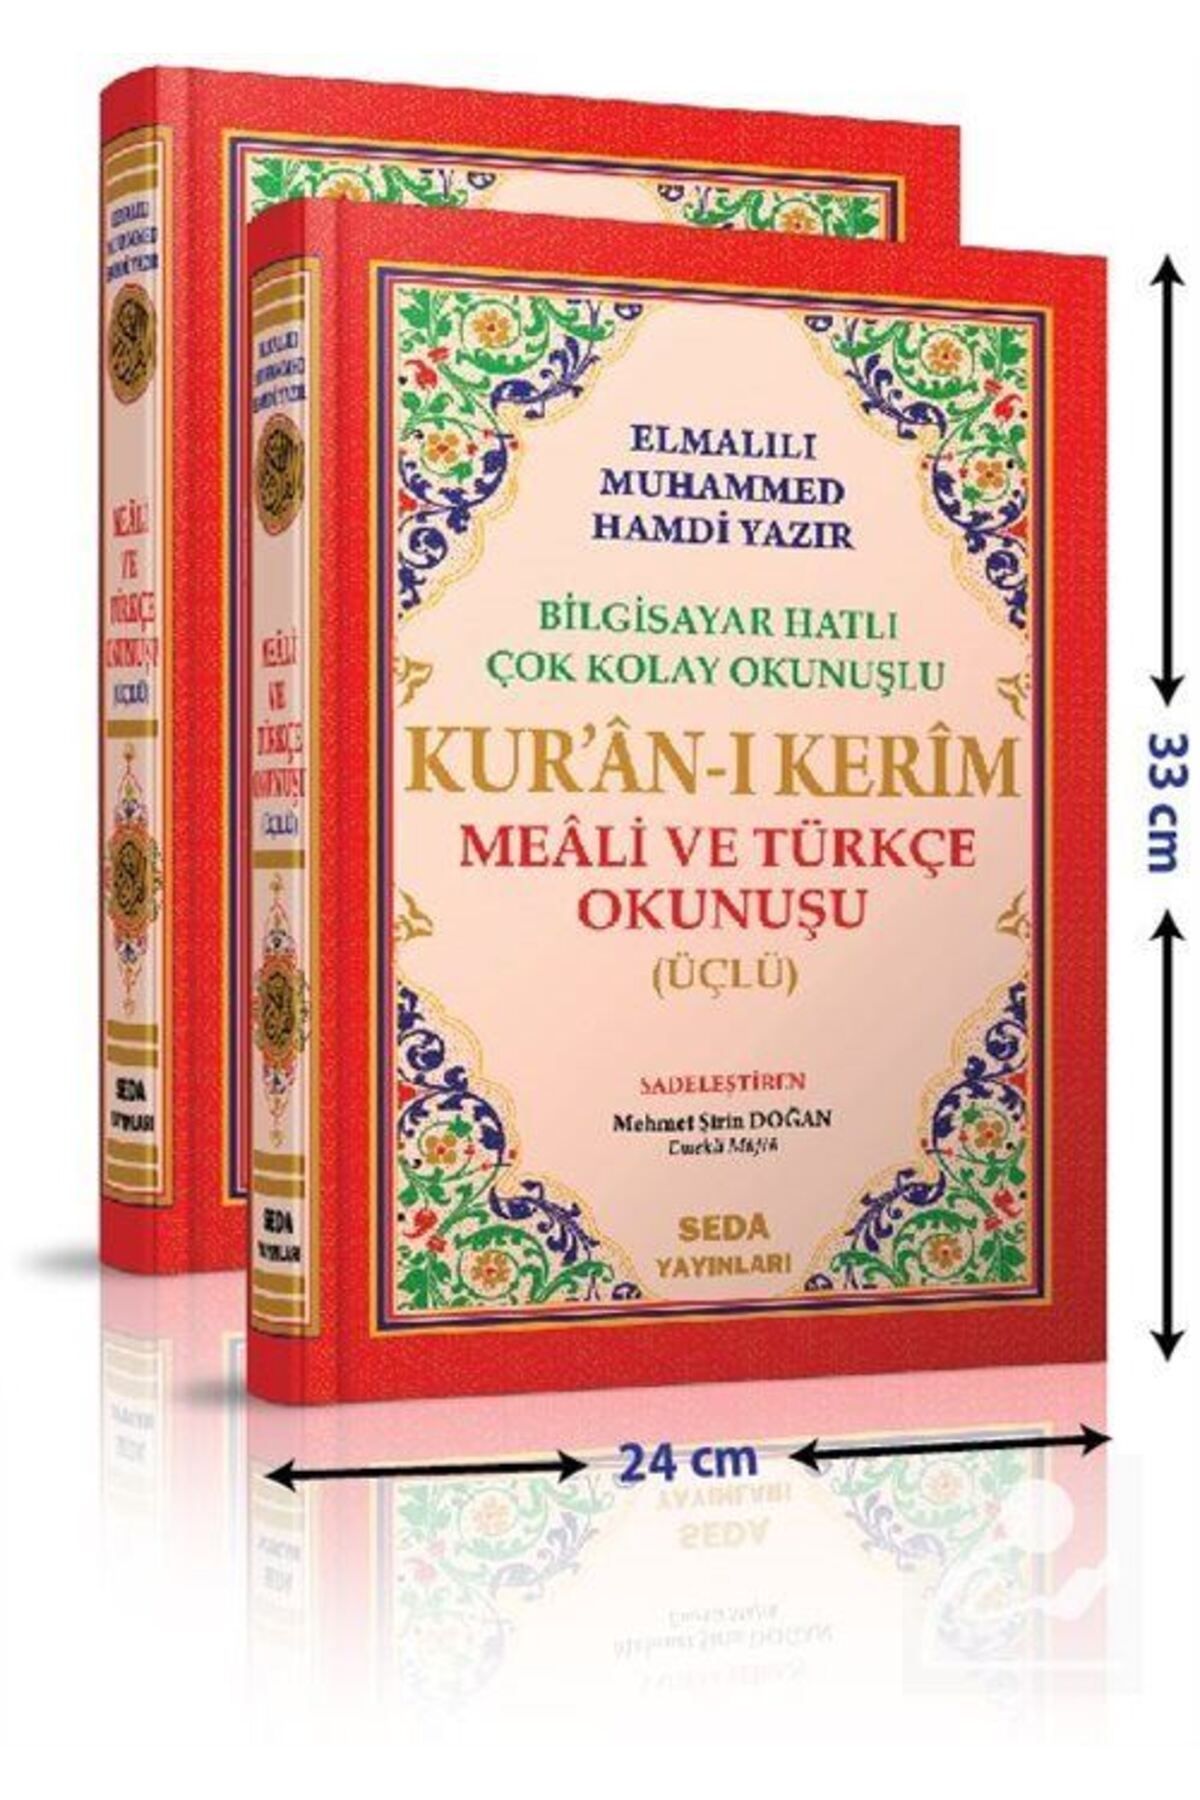 Seda Yayınları Kur'an-ı Kerim Cami Boy (SADE) / Üçlü Kur'an-ı Kerim Mealleri Kod:002